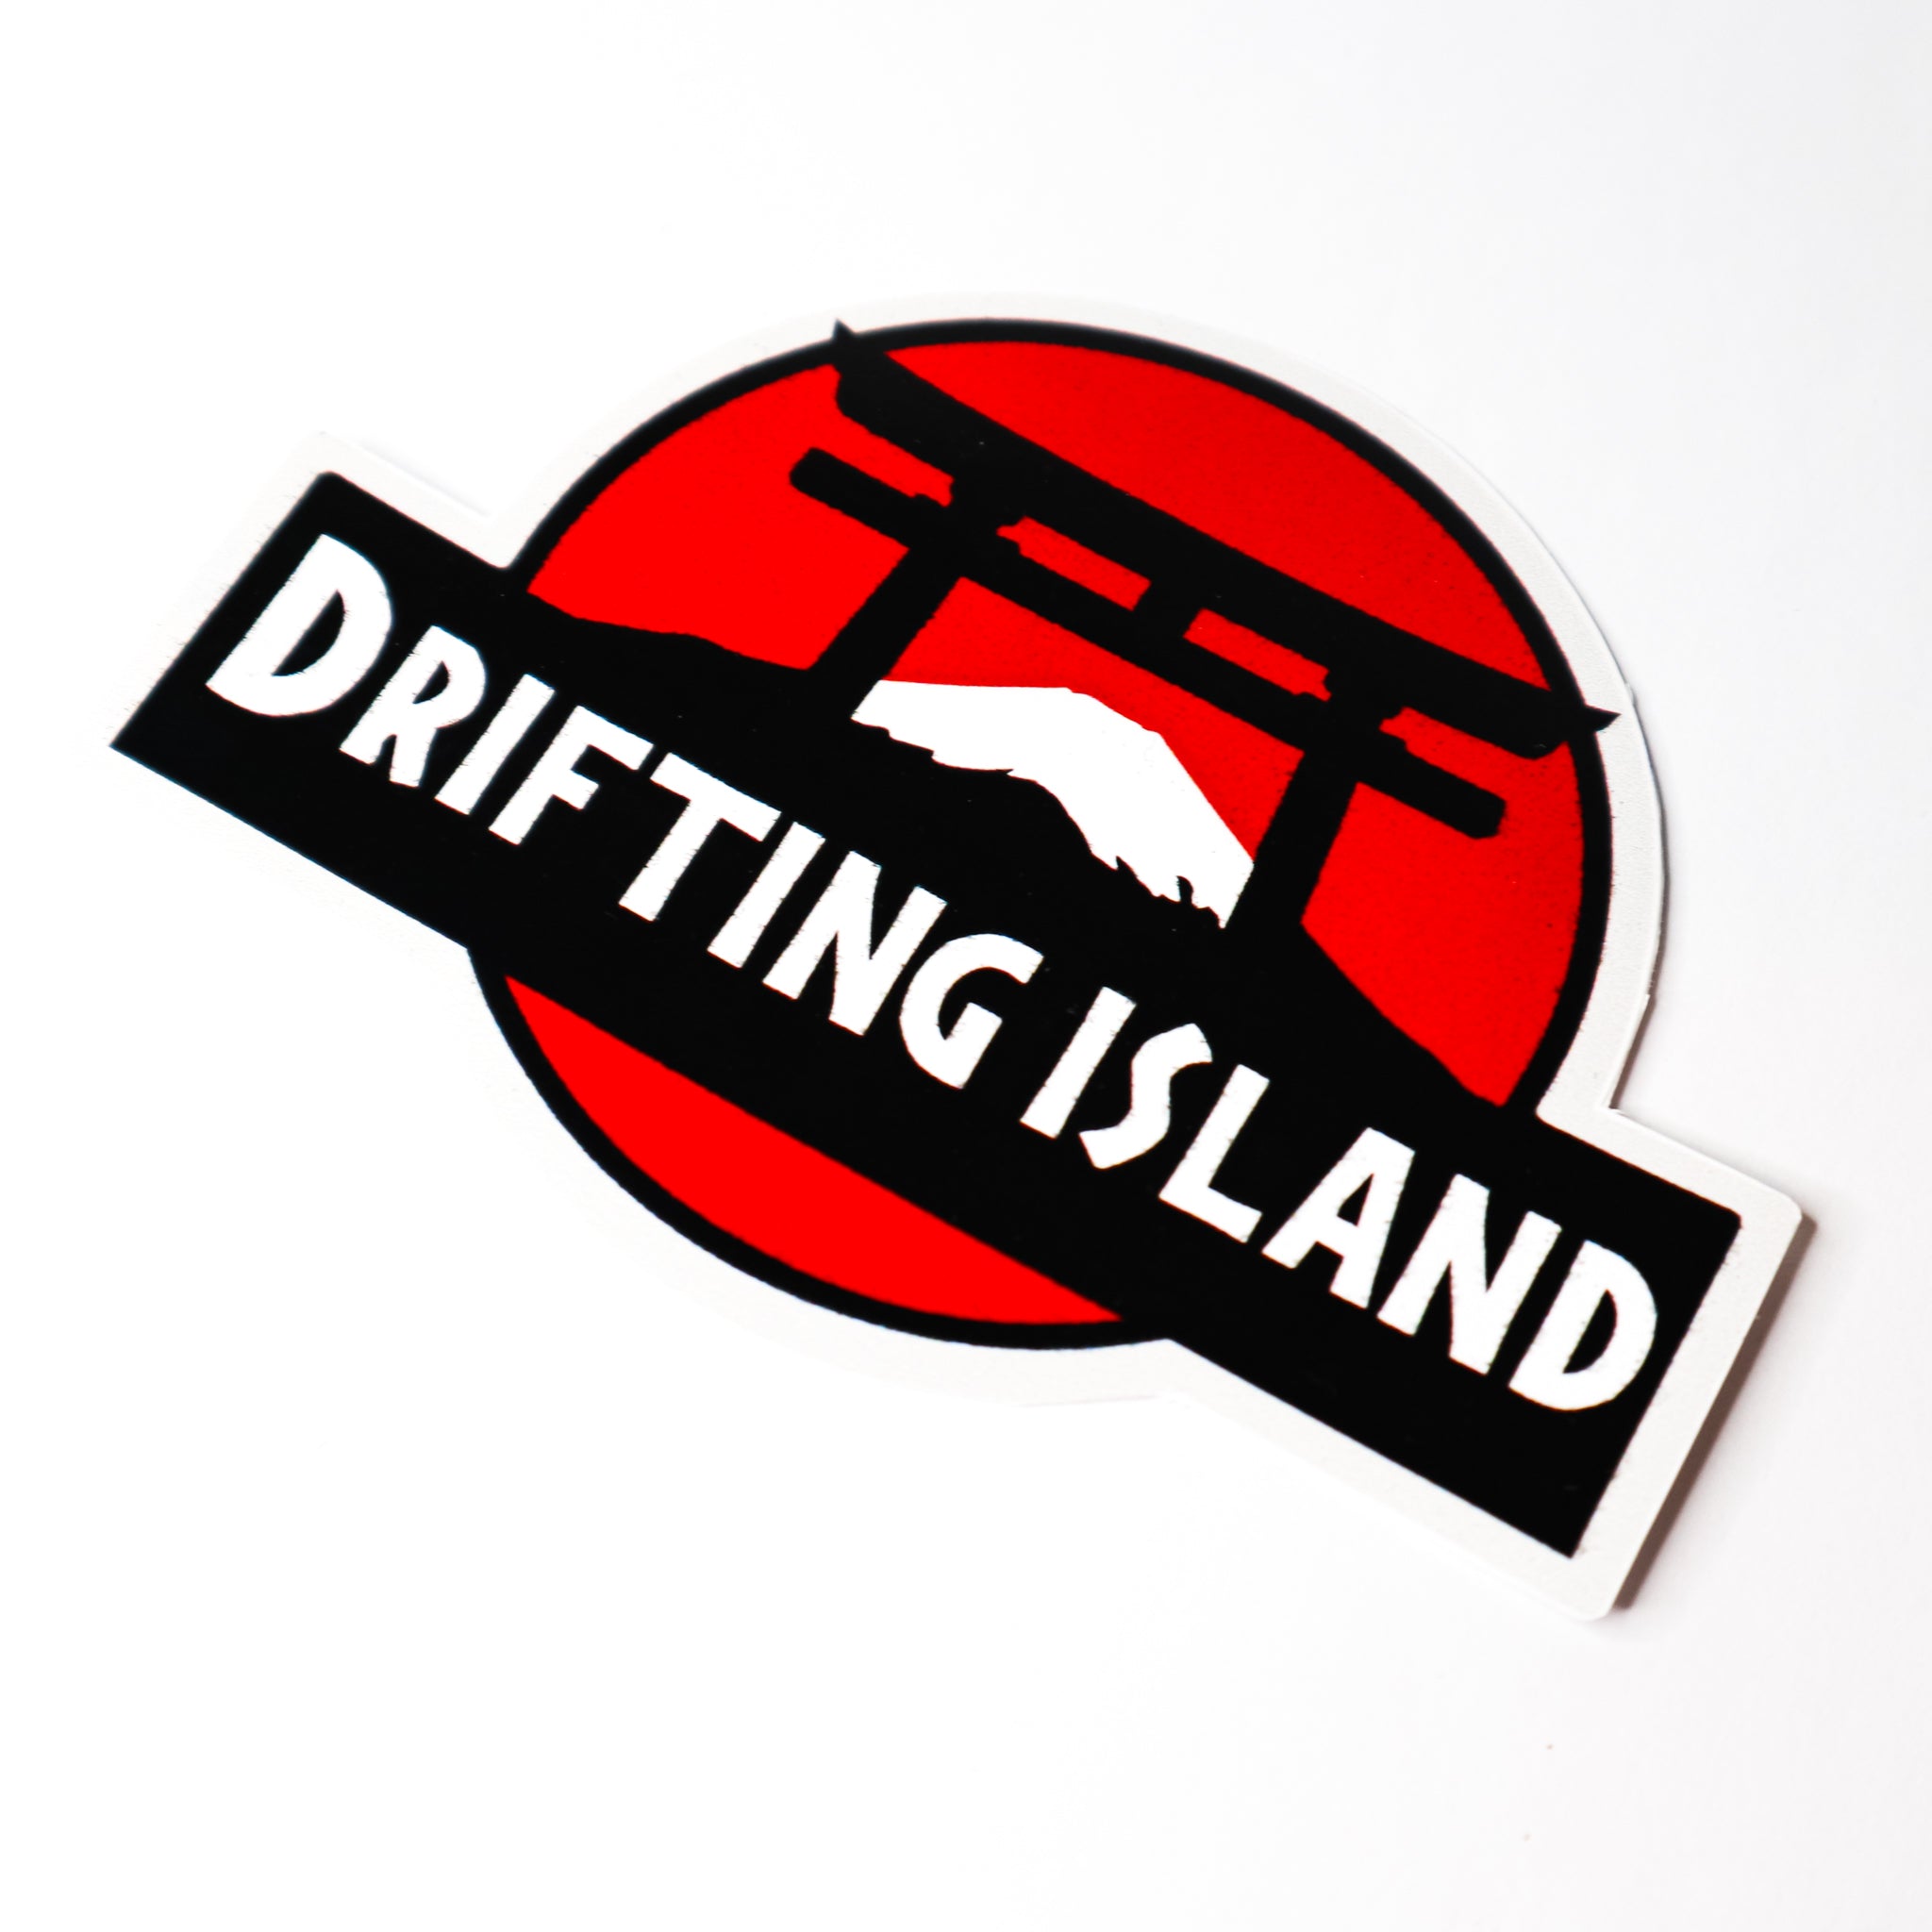 LPST065. JP DRIFTING ISLAND